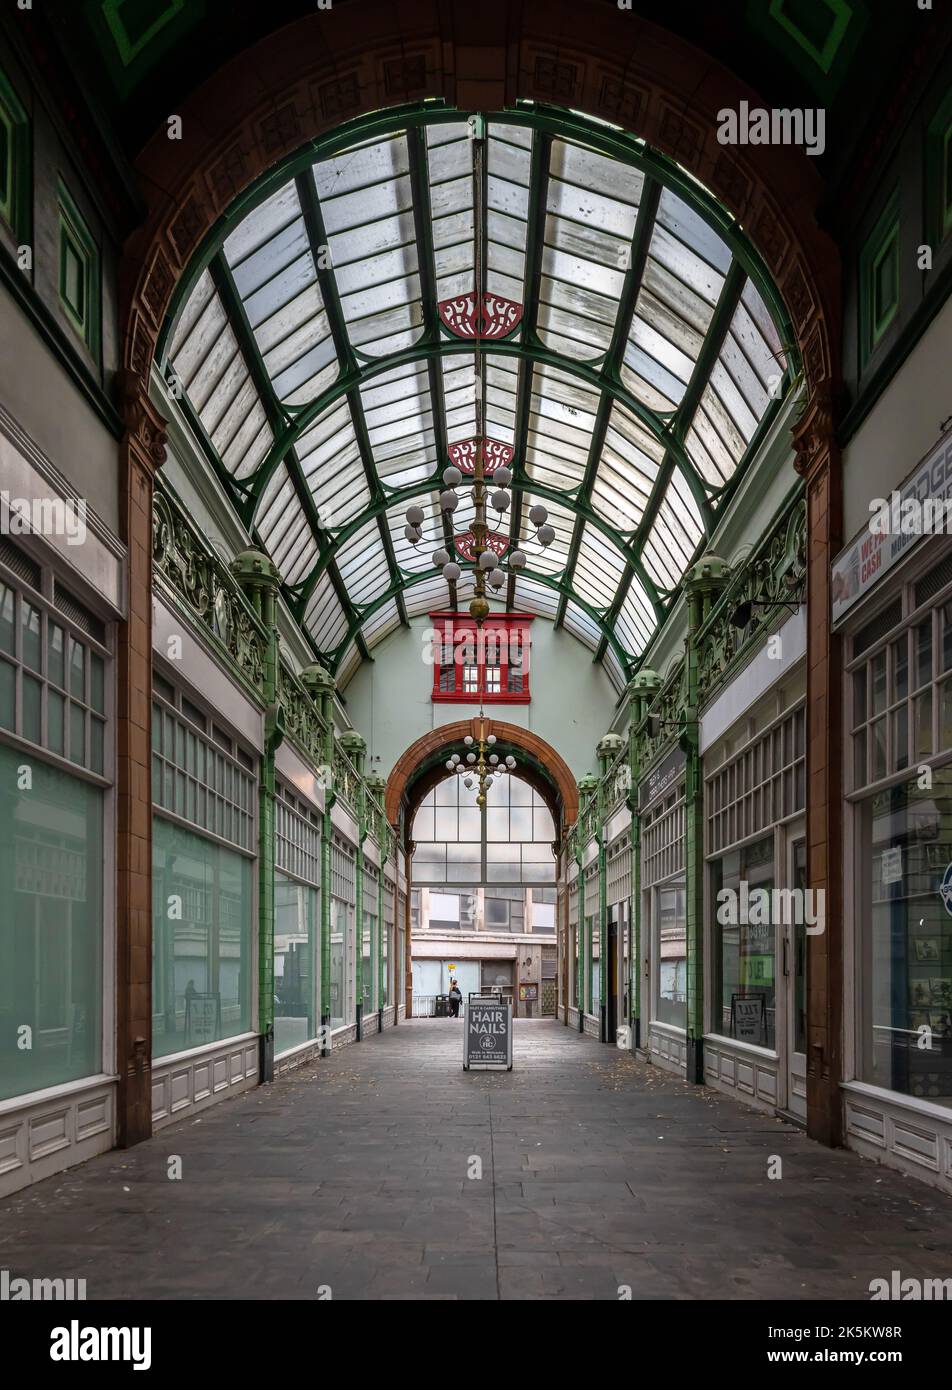 City Arcade è una galleria di negozi vittoriana nel centro di Birmingham. Presenta un tetto in vetro ad arco e lesene in terracotta verde. Foto Stock